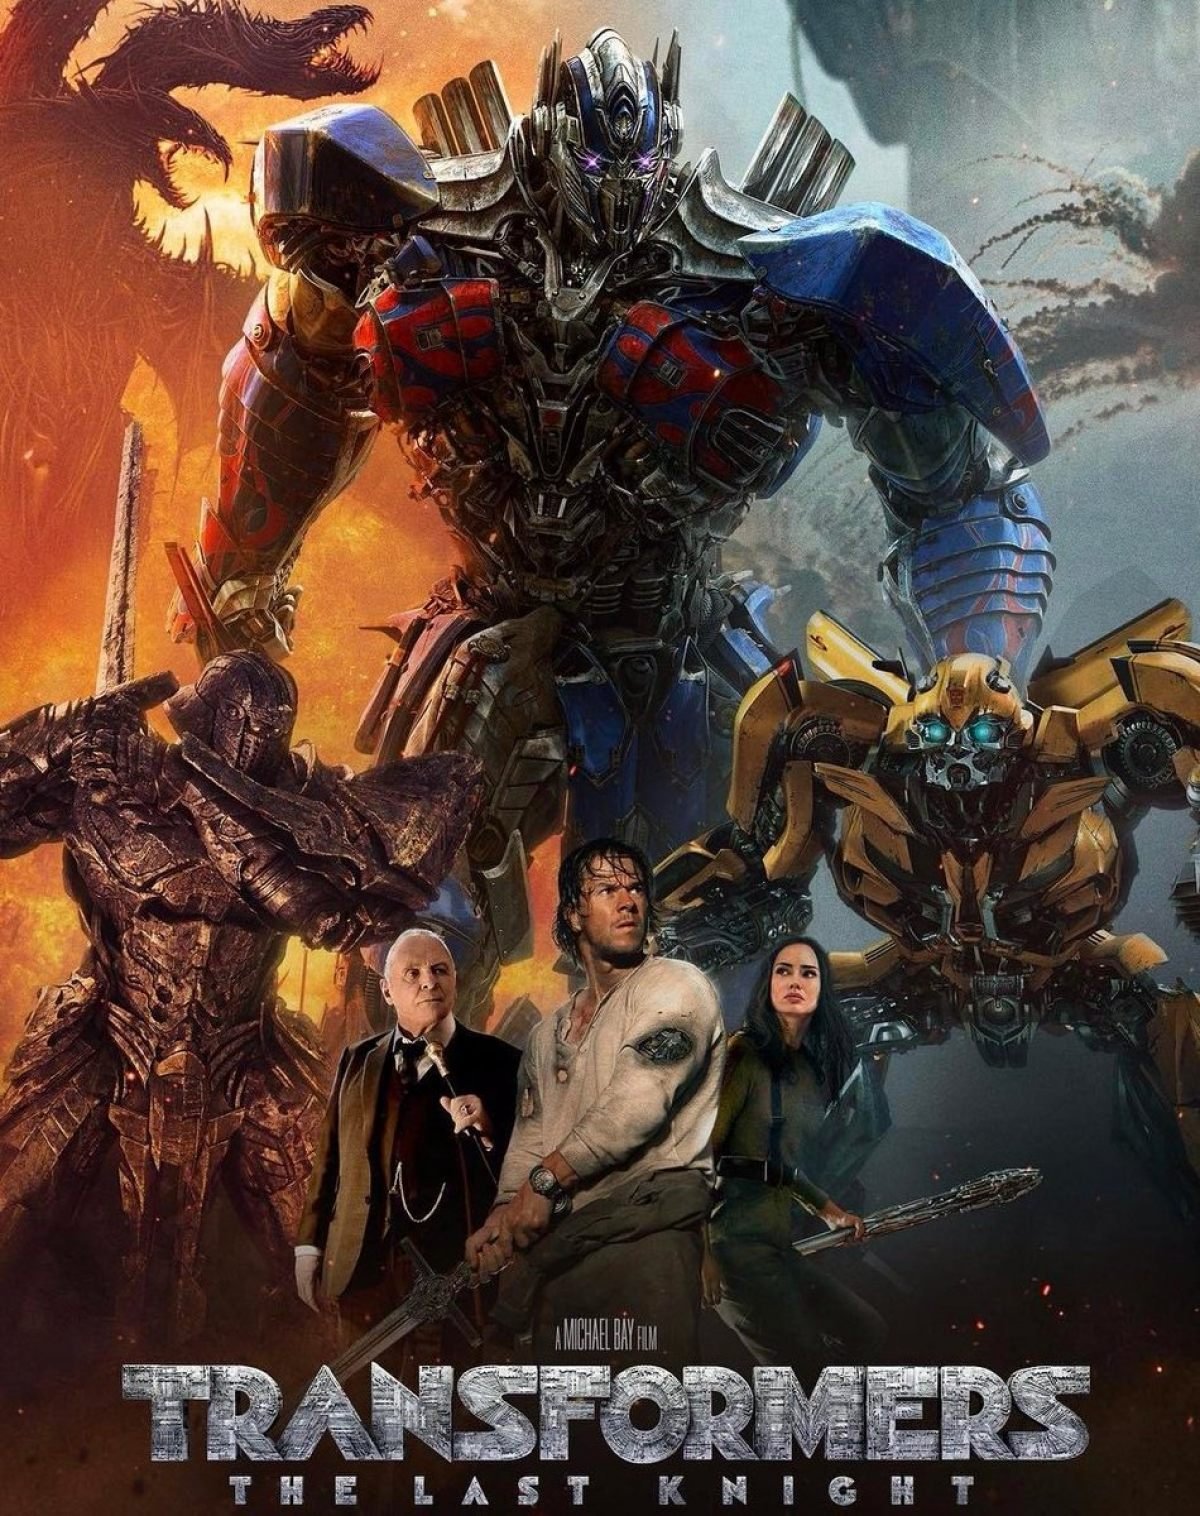 Os bastidores do aguardado filme Transformers: O Último Cavaleiro